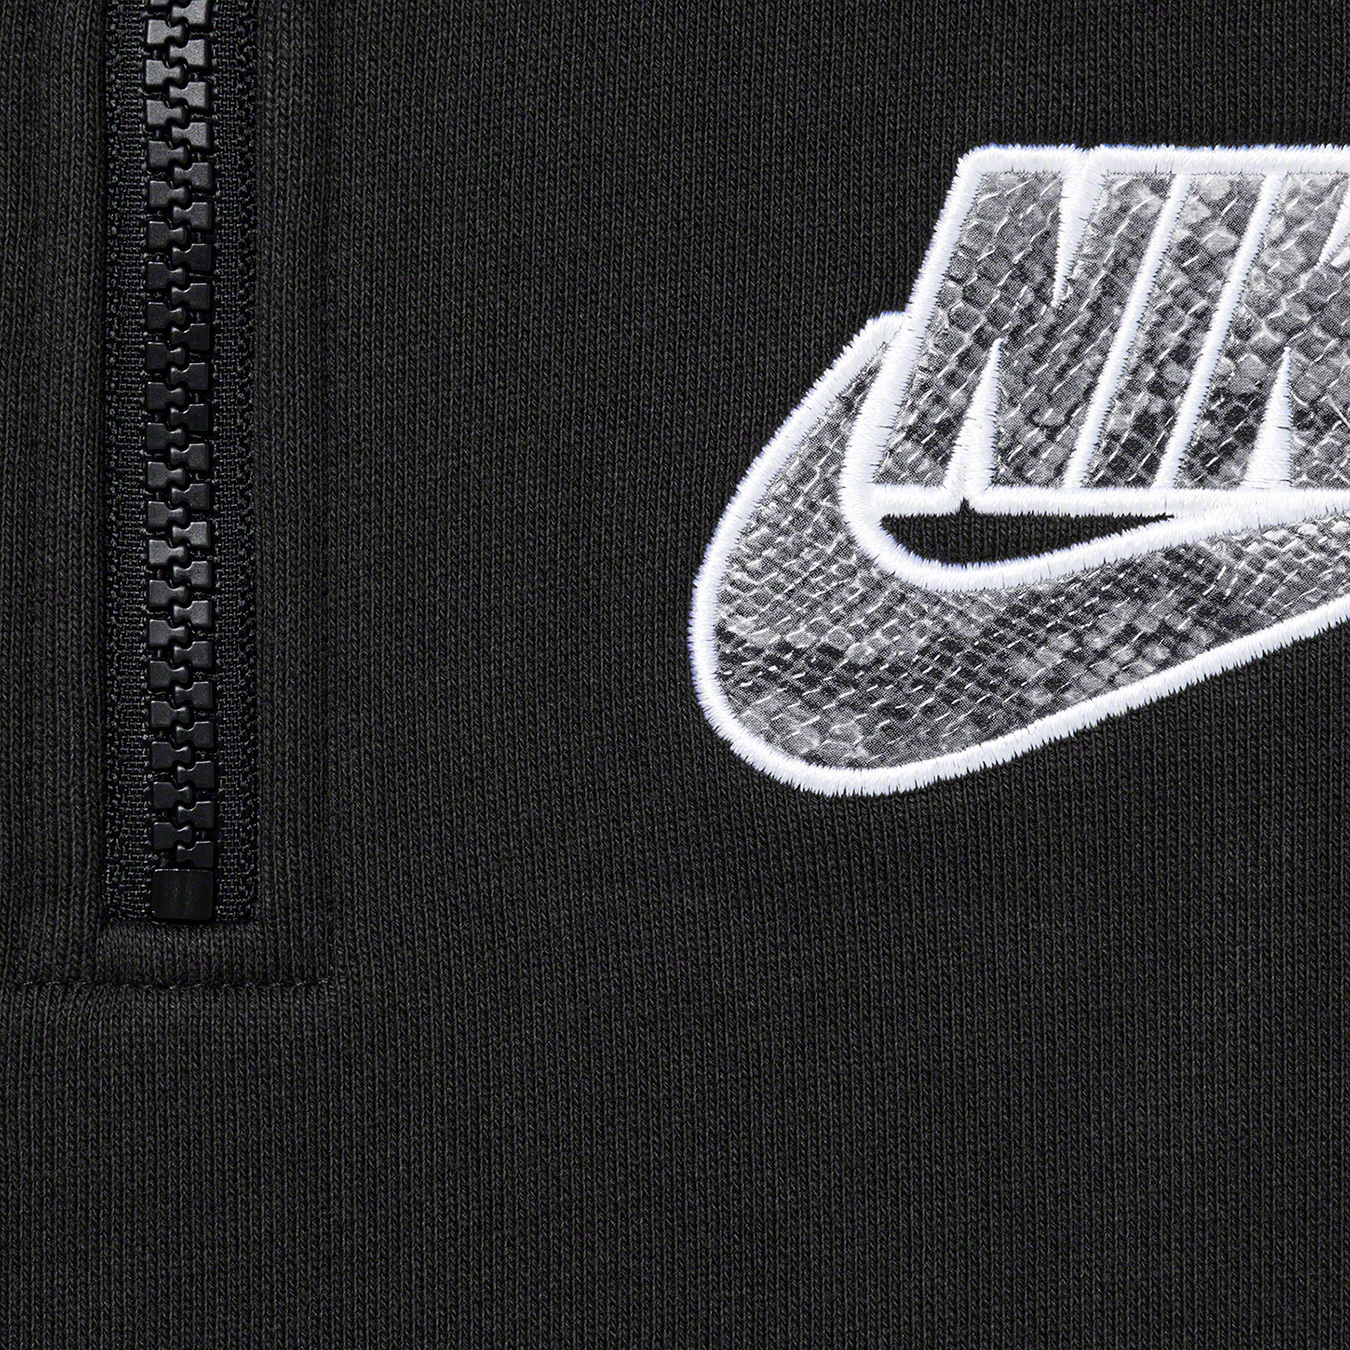 Nike Half Zip Hooded Sweatshirt - spring summer 2021 - Supreme